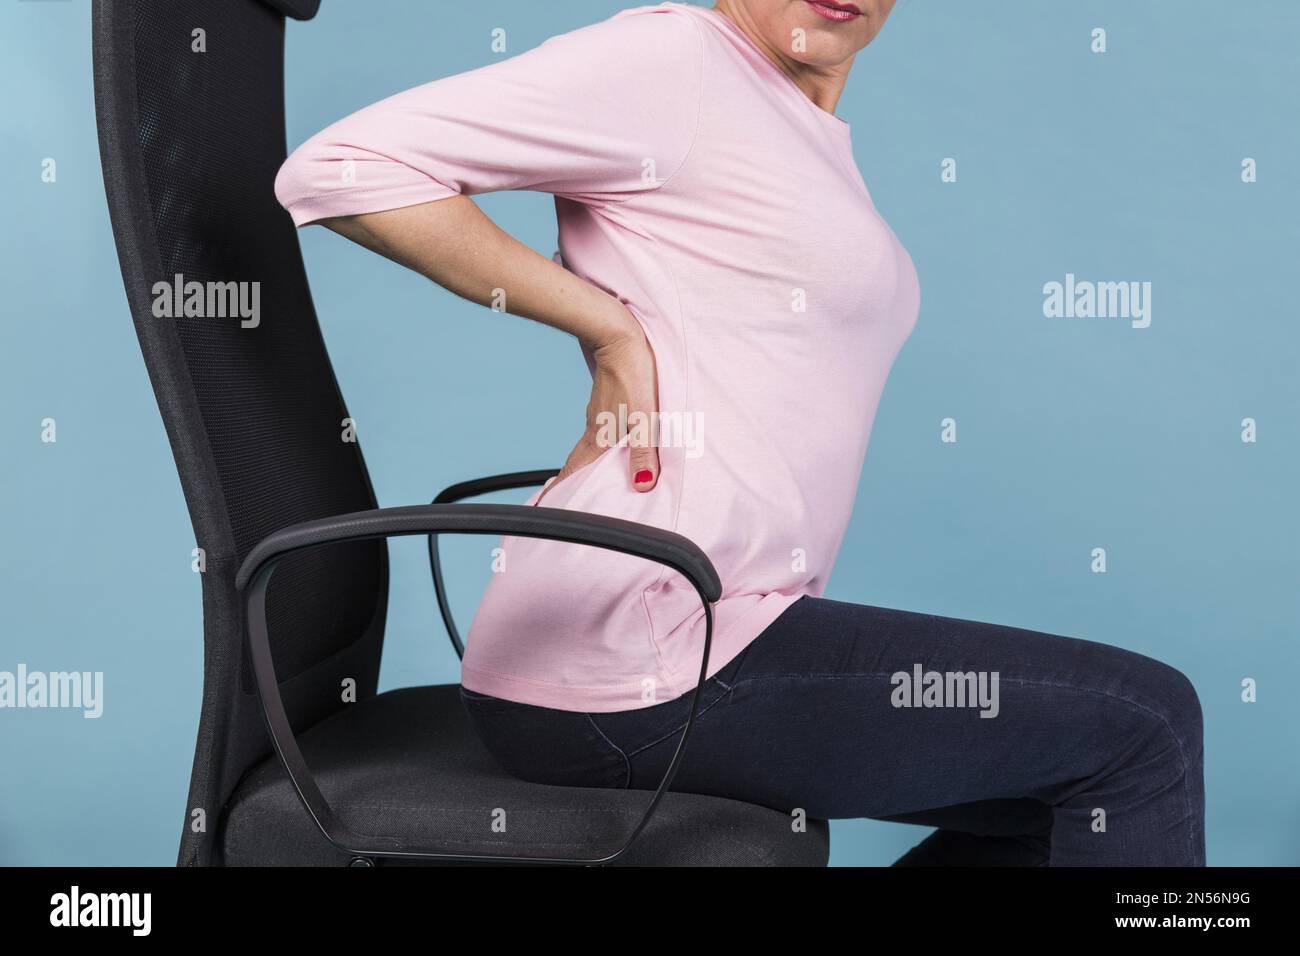 femme assise avec arrière-plan bleu. Résolution et superbe photo de haute qualité Banque D'Images